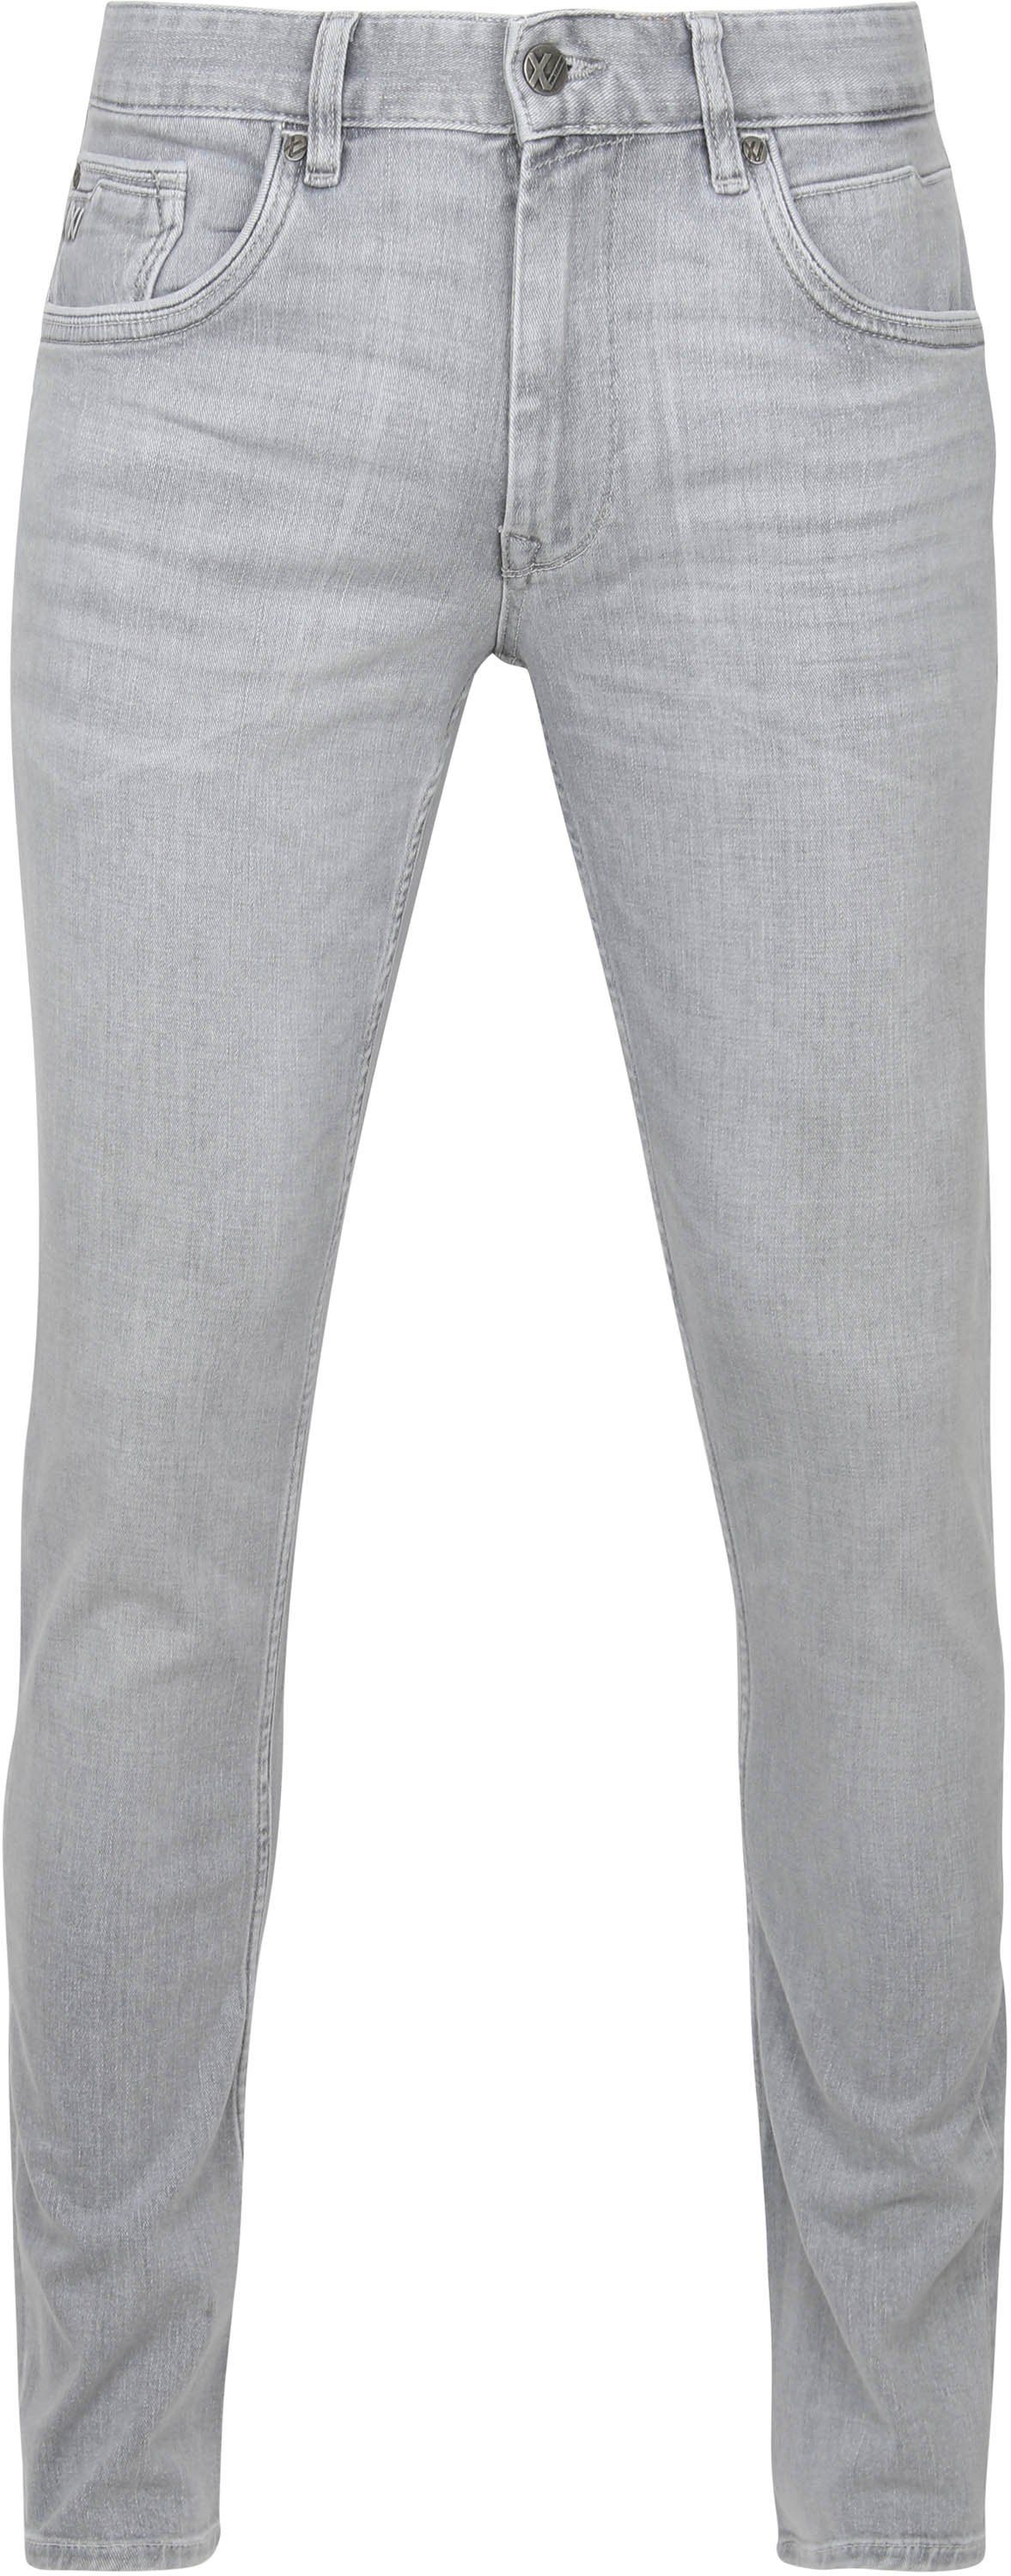 PME Legend Denim Jeans Light Grey size W 29